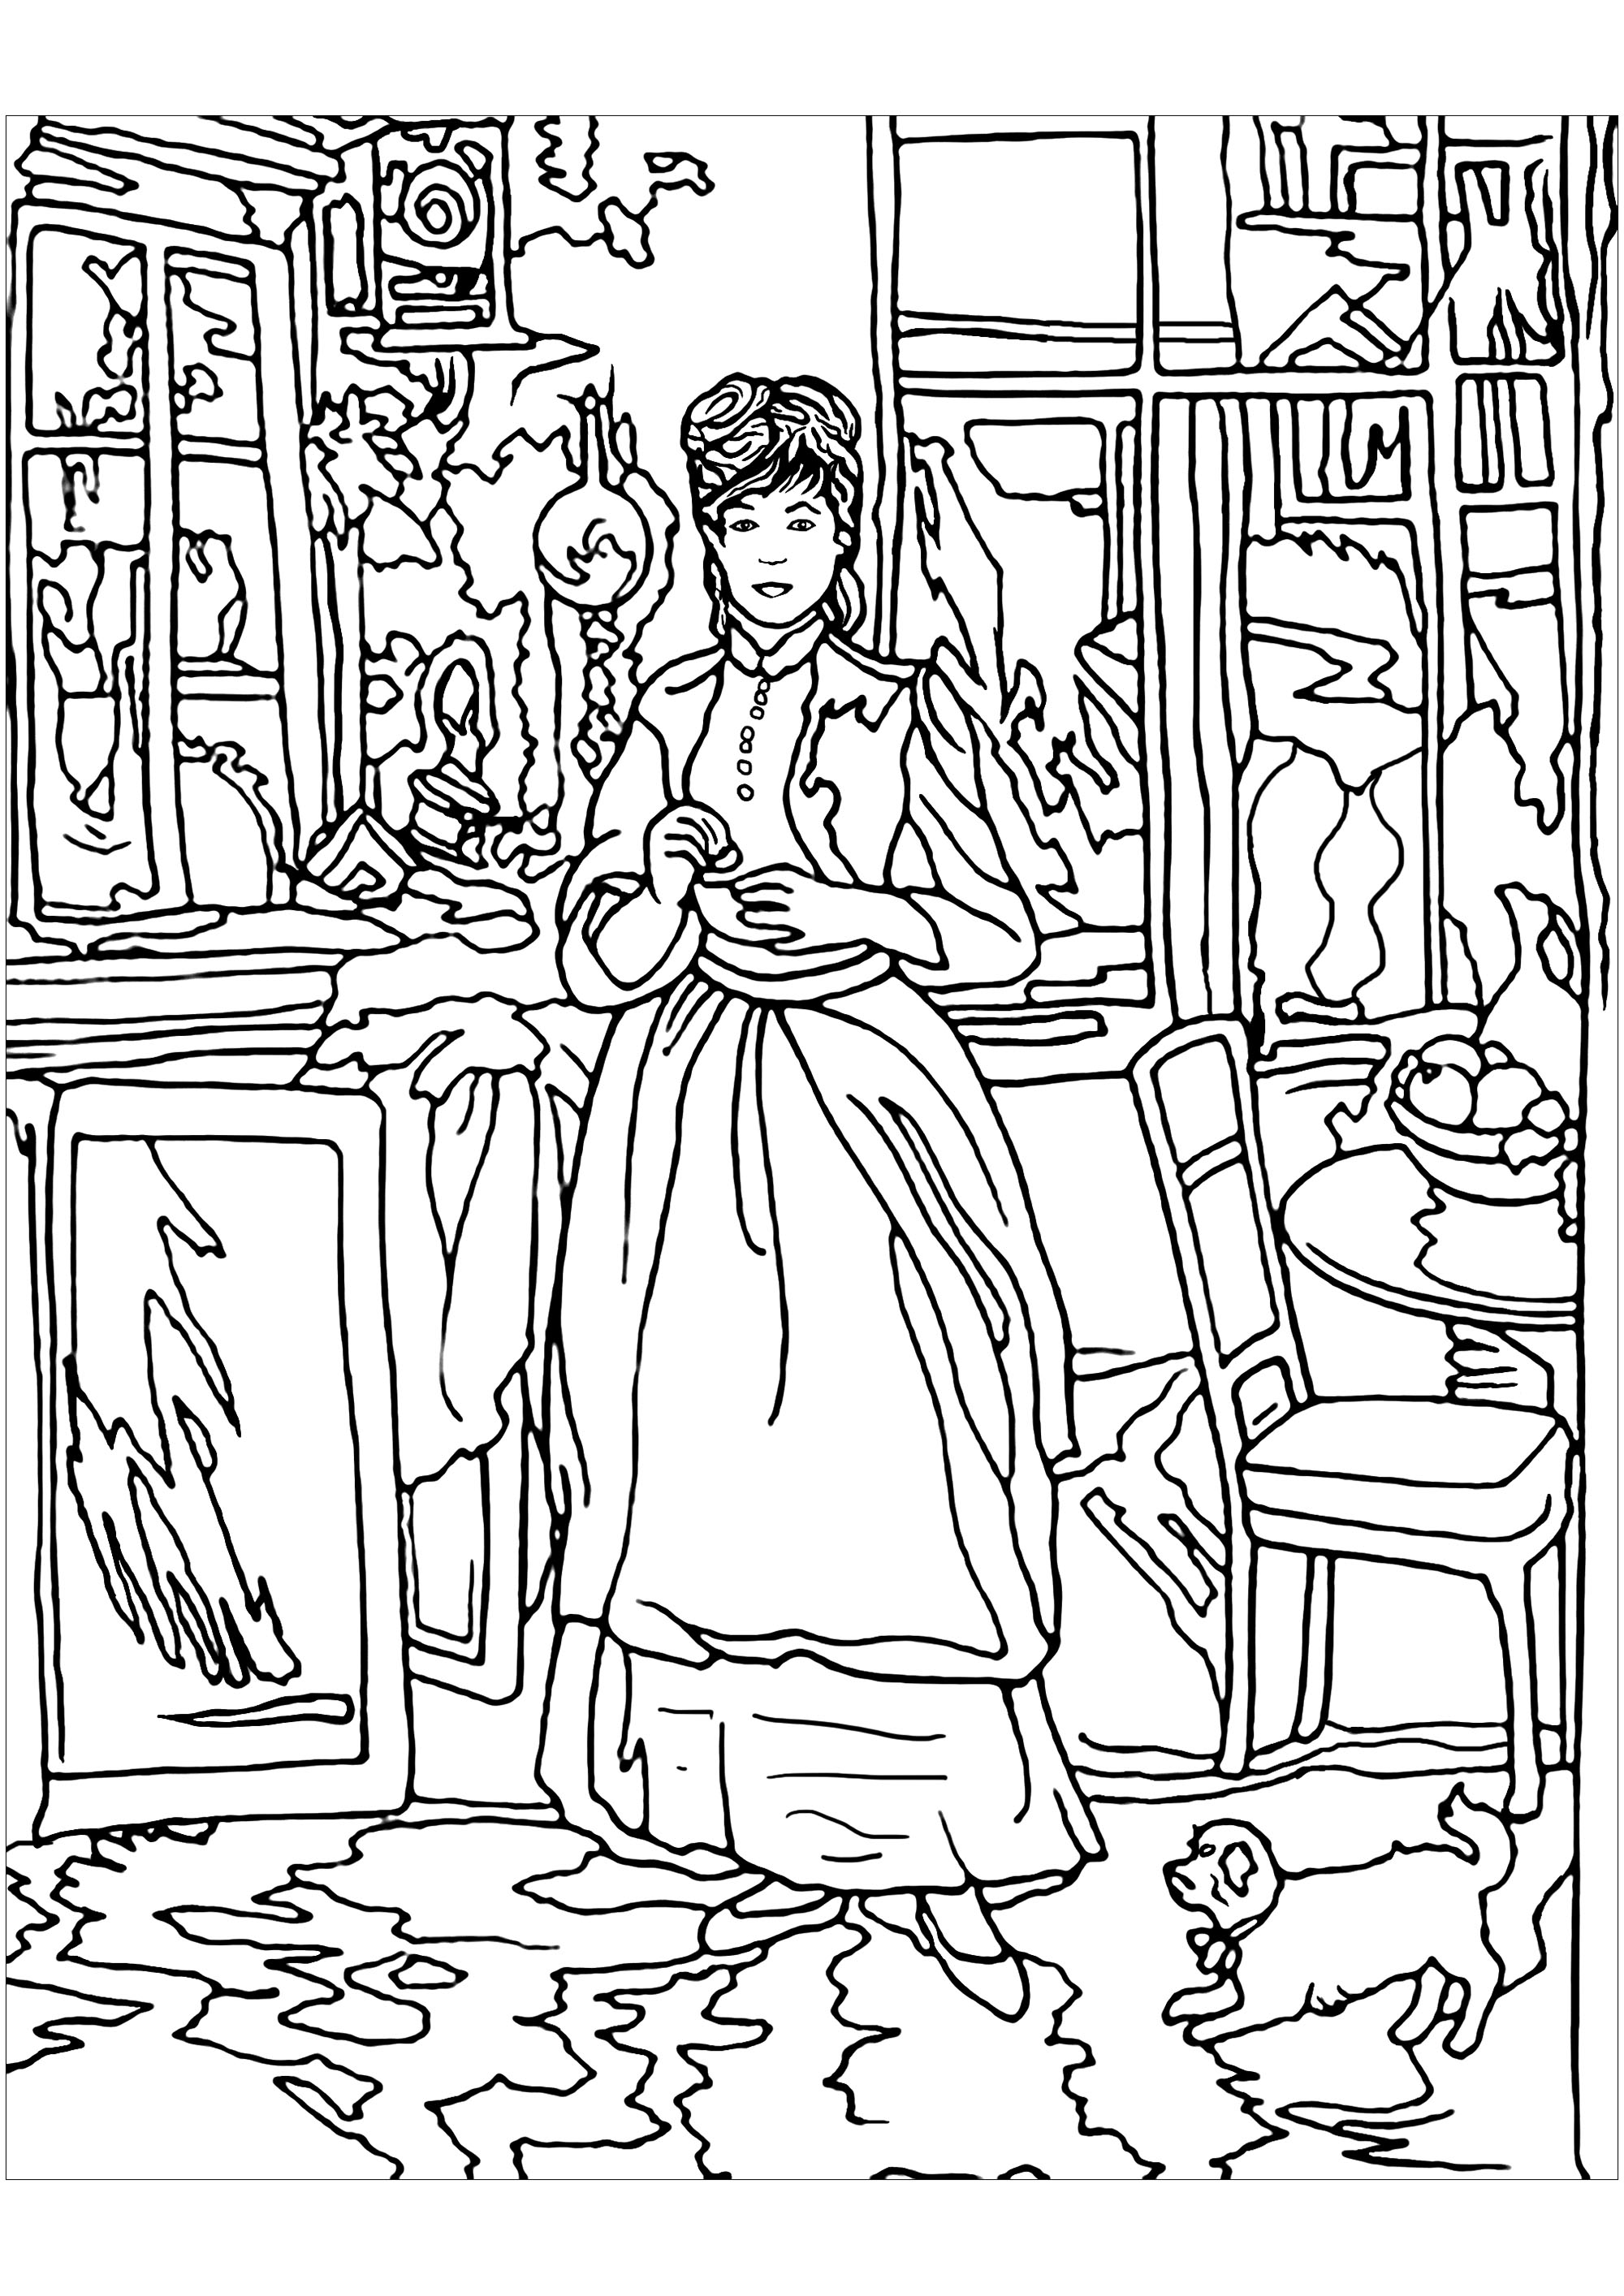 Página para colorear inspirada en una obra de la pintora impresionista Berthe Morisot : En el comedor. Los cuadros de Morisot revelan aspectos de la vida femenina de finales del siglo XIX, incluso momentos privados e íntimos generalmente vedados a sus homólogos masculinos.